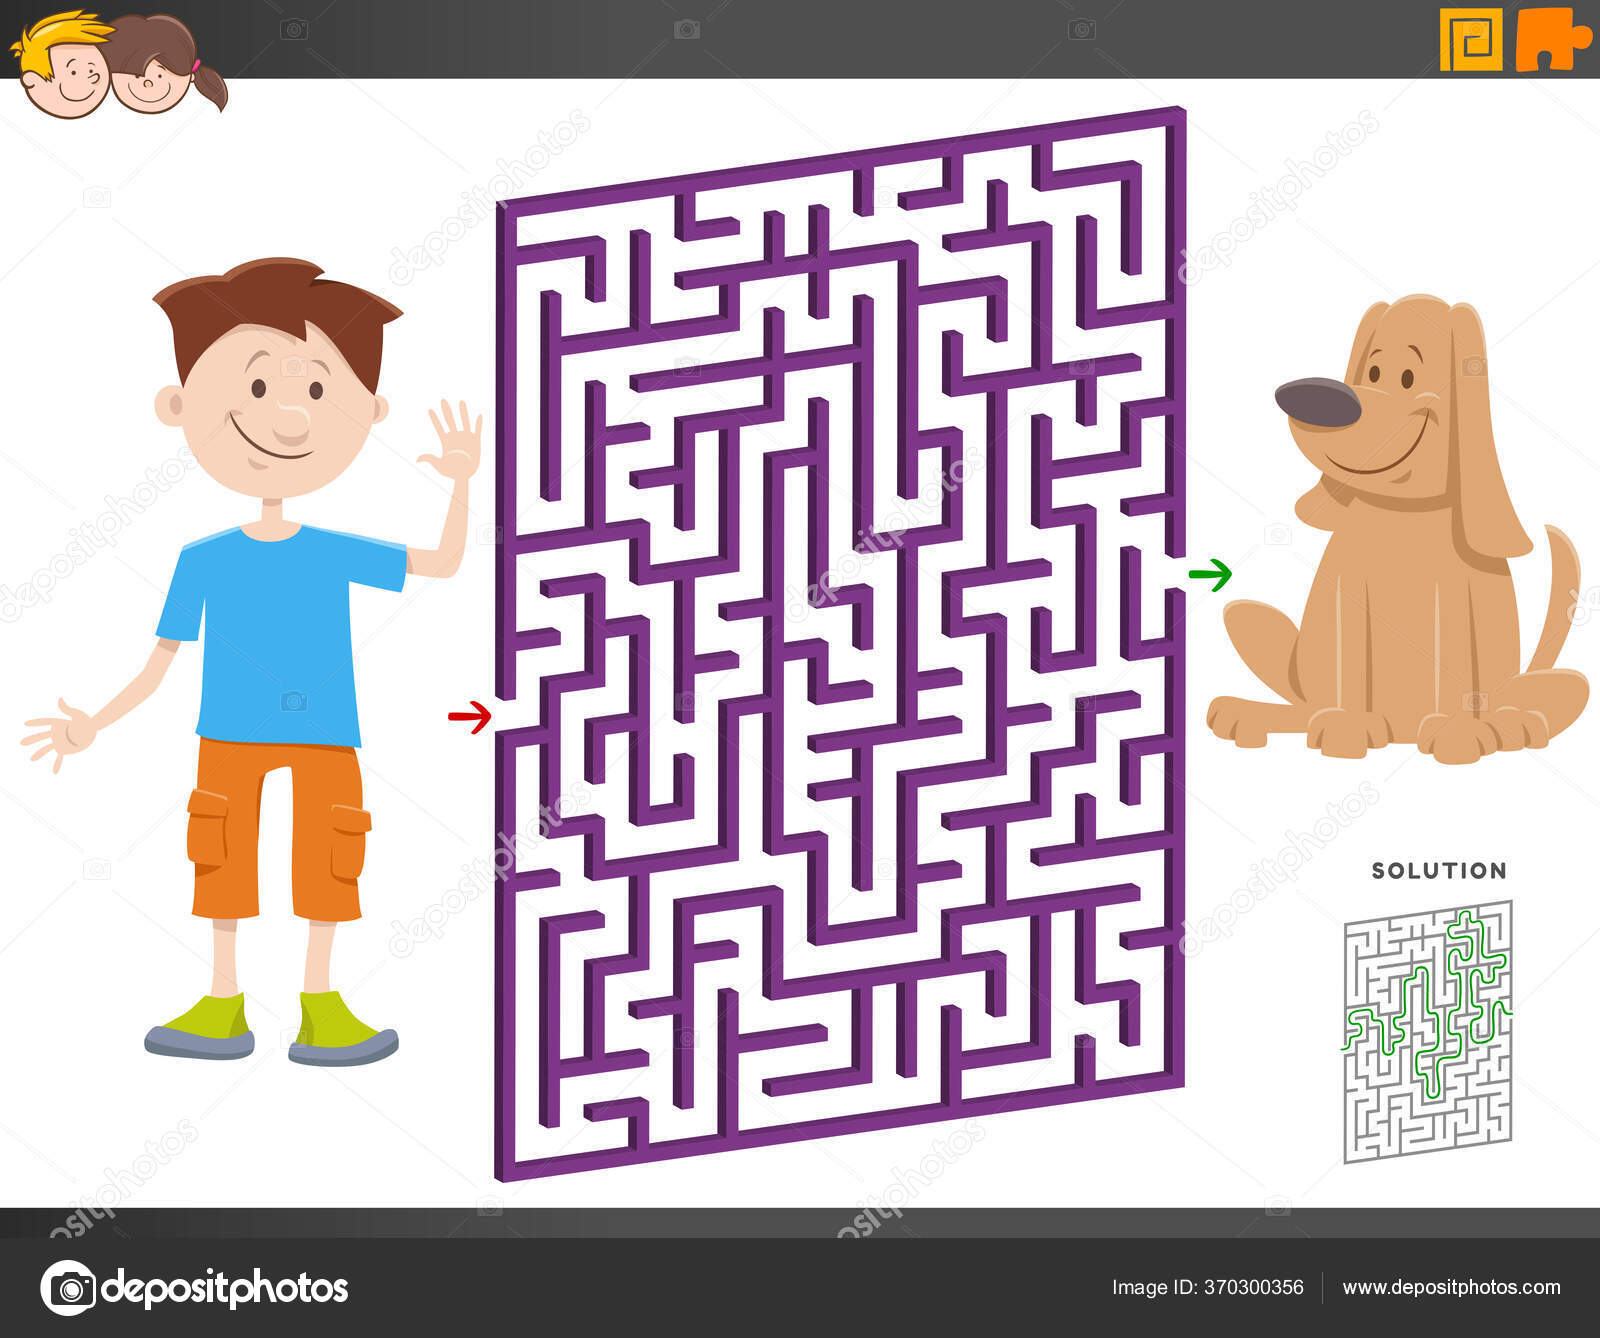 Jogos de quebra-cabeça com cachorros engraçados de desenho animado